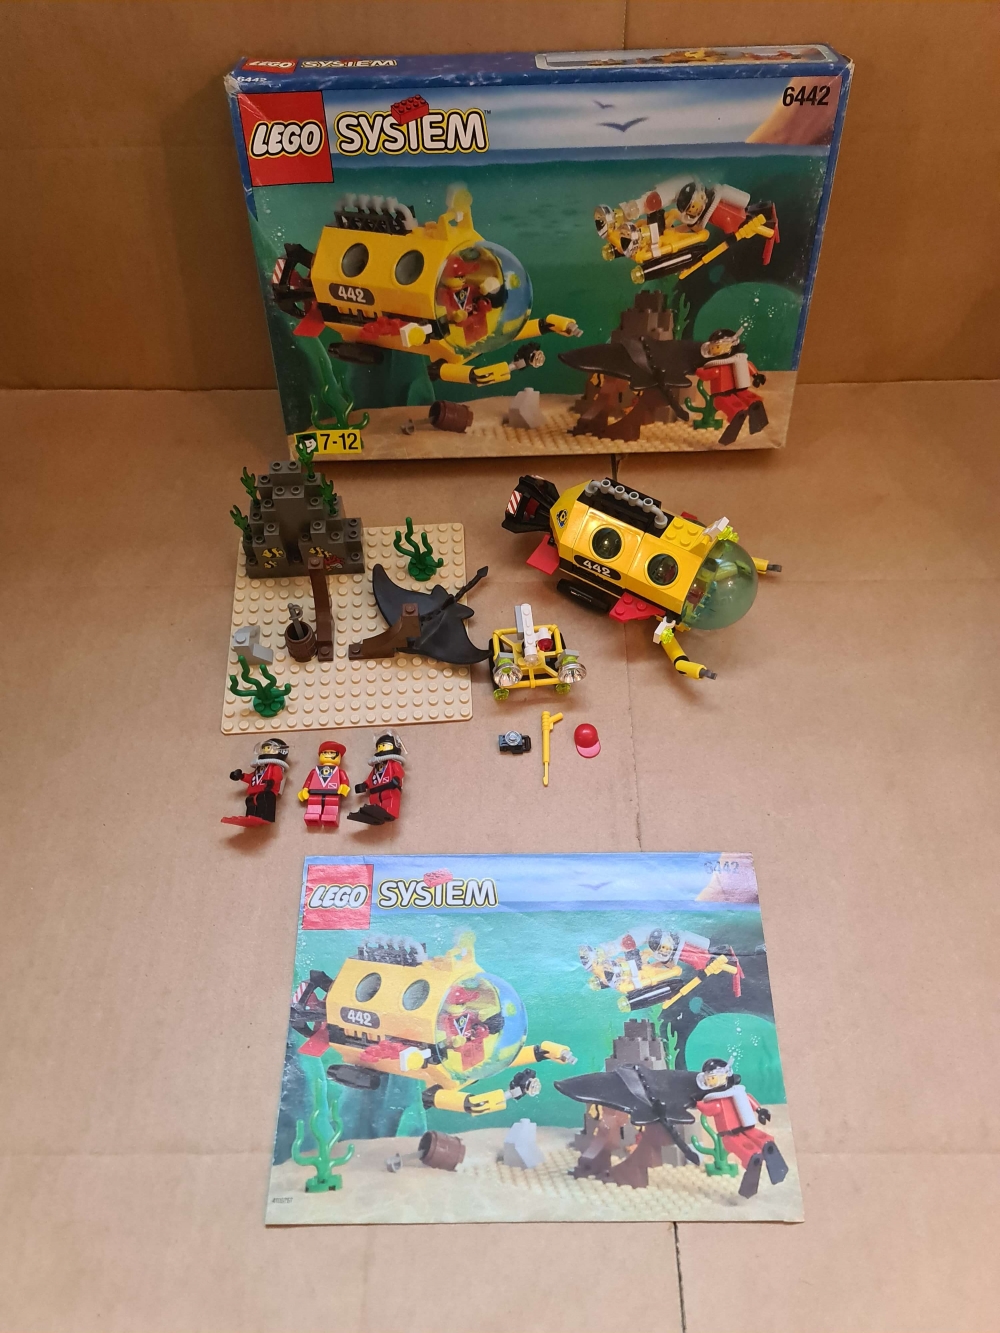 Sett 6442 fra Lego Town serien.
Meget pent.
Komplett med manual og eske.